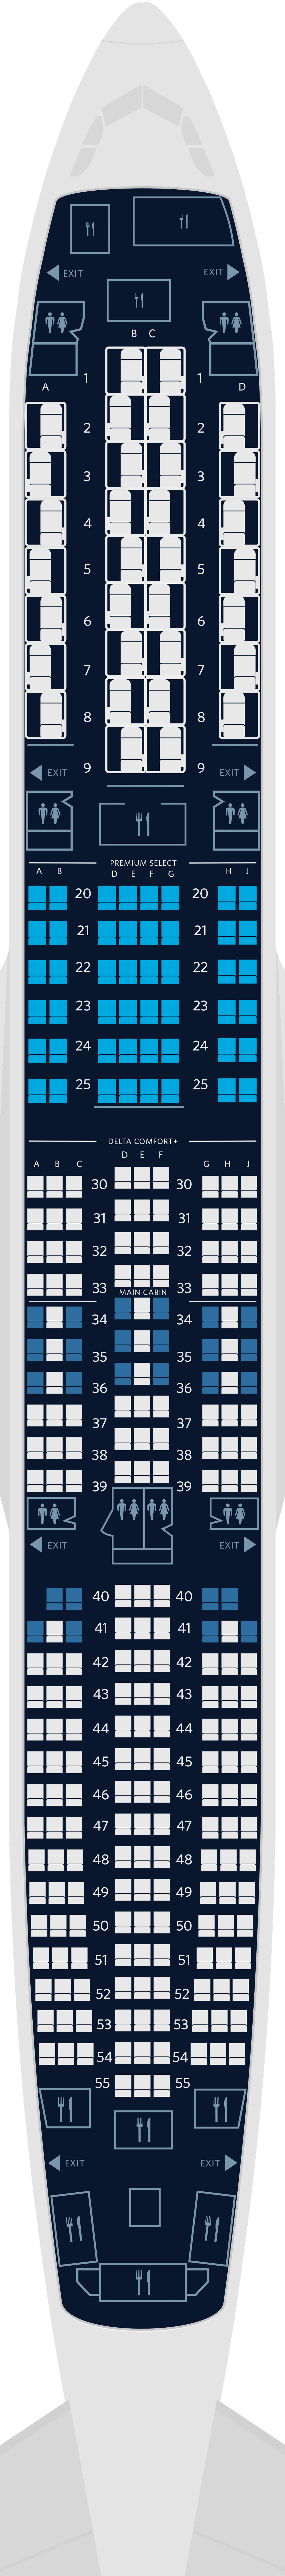 imagem de mapa de assentos